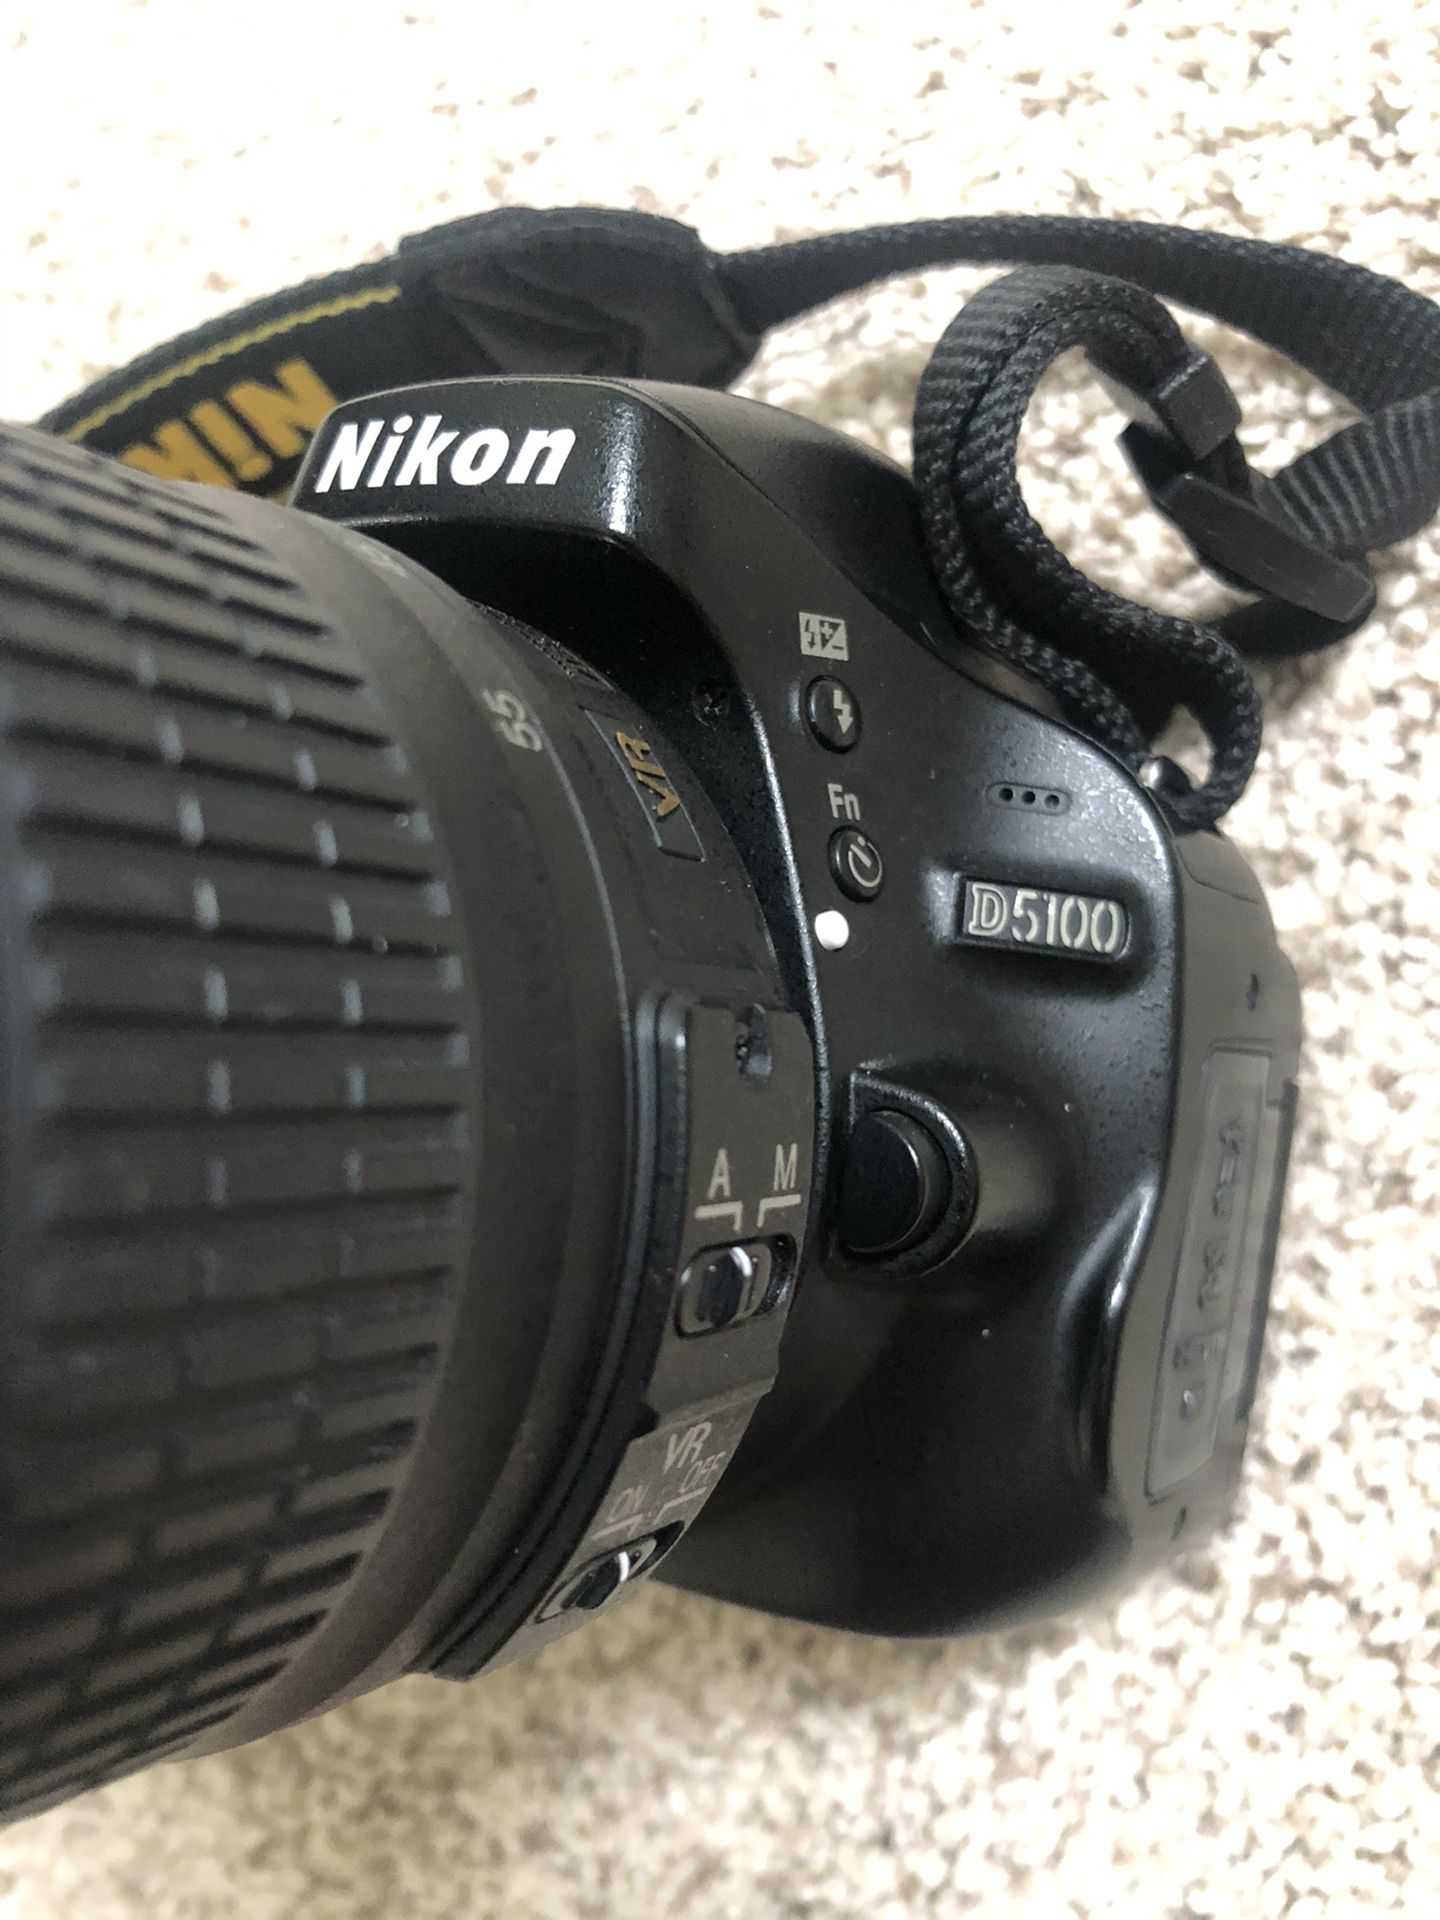 Nikon D5100 + 18-55mm Lens